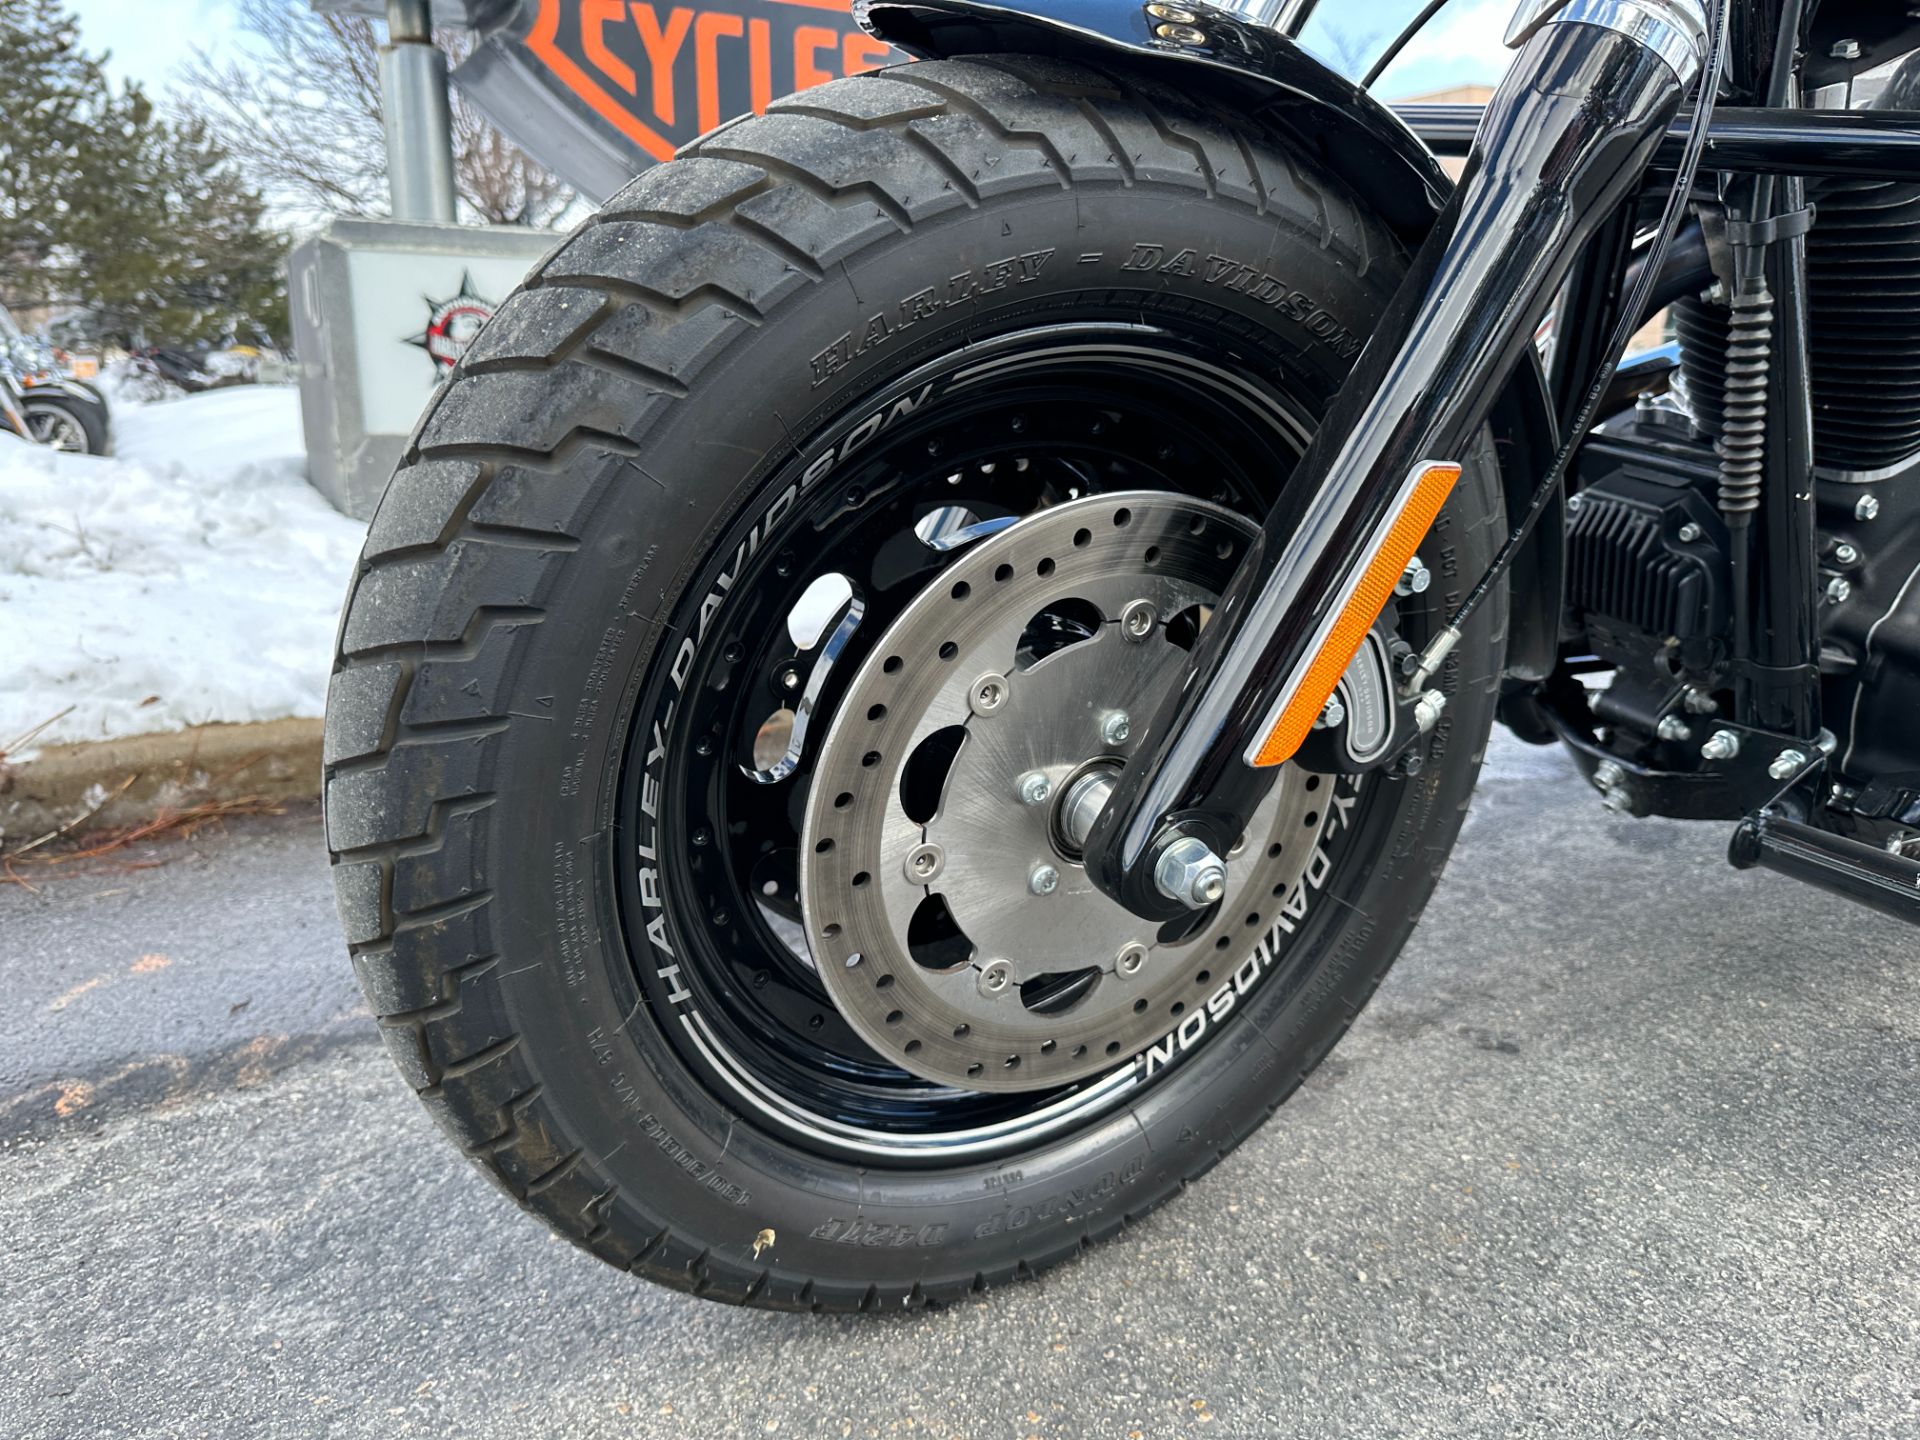 2017 Harley-Davidson Fat Bob in Sandy, Utah - Photo 9